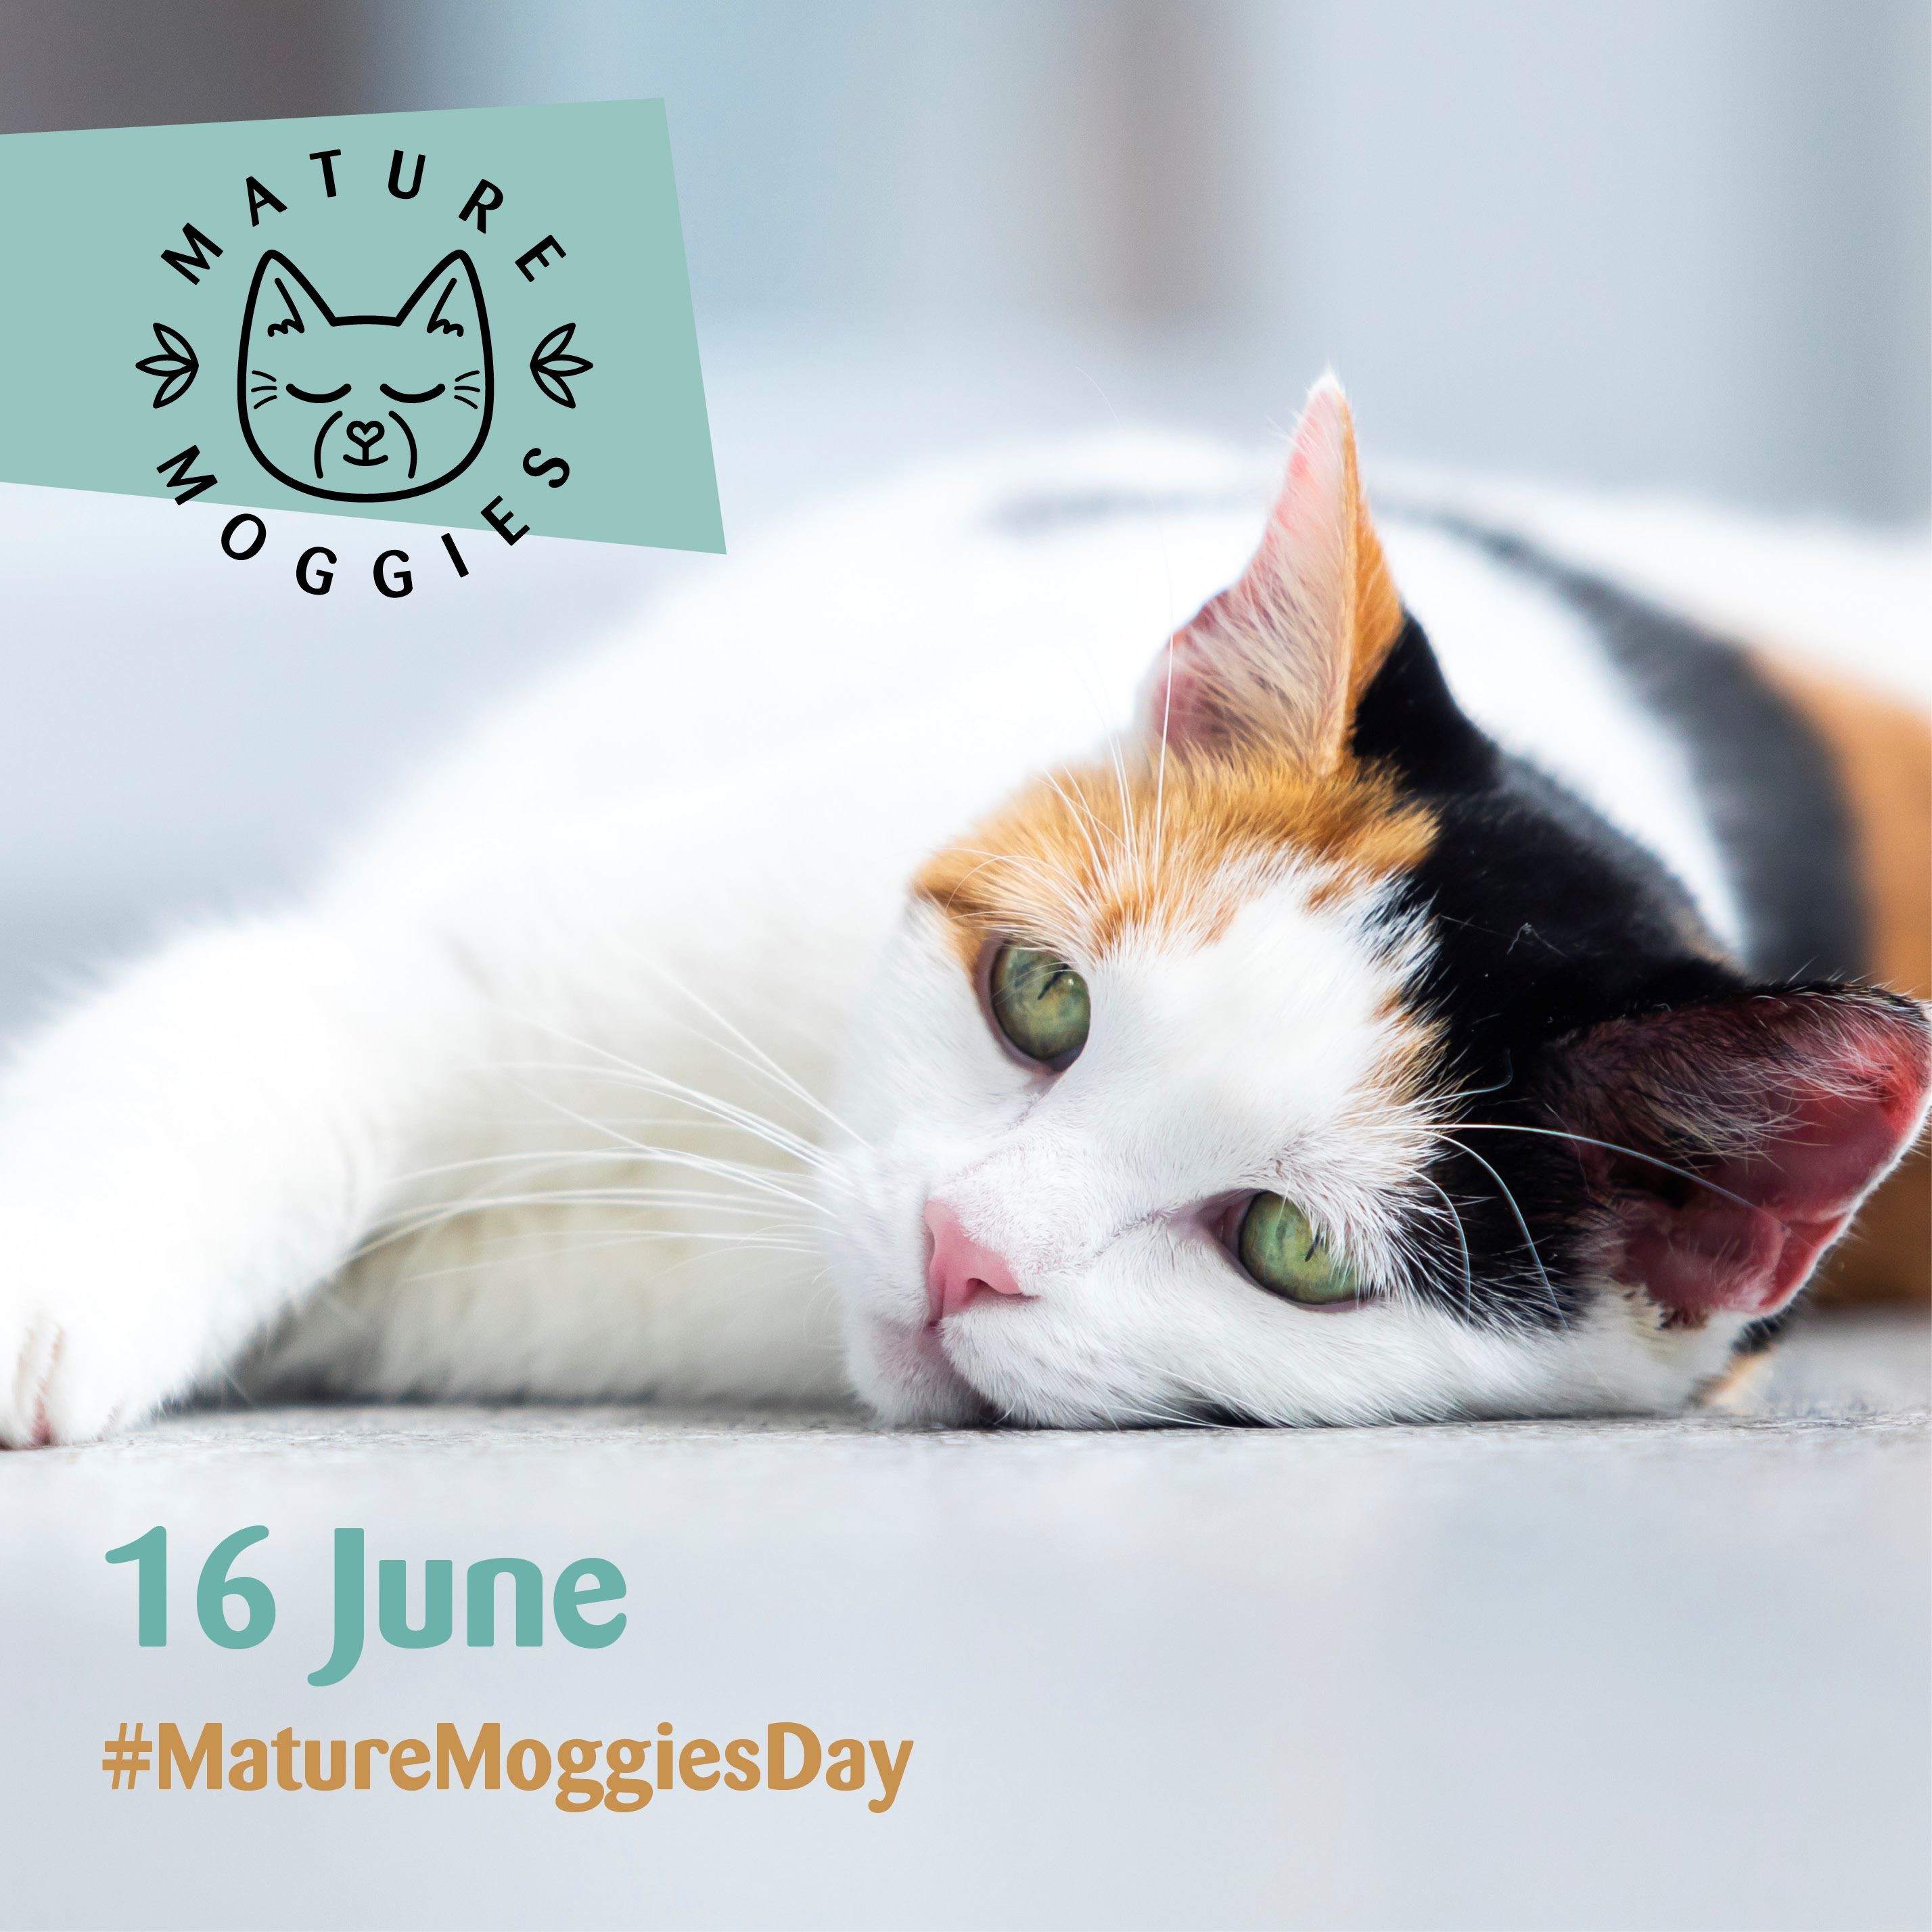 День взрослых моггисов (16 июня) — это шанс поддержать пожилых кошек, которым требуется в три раза больше времени, чтобы найти новый дом, чем более молодым кошкам и котятам.